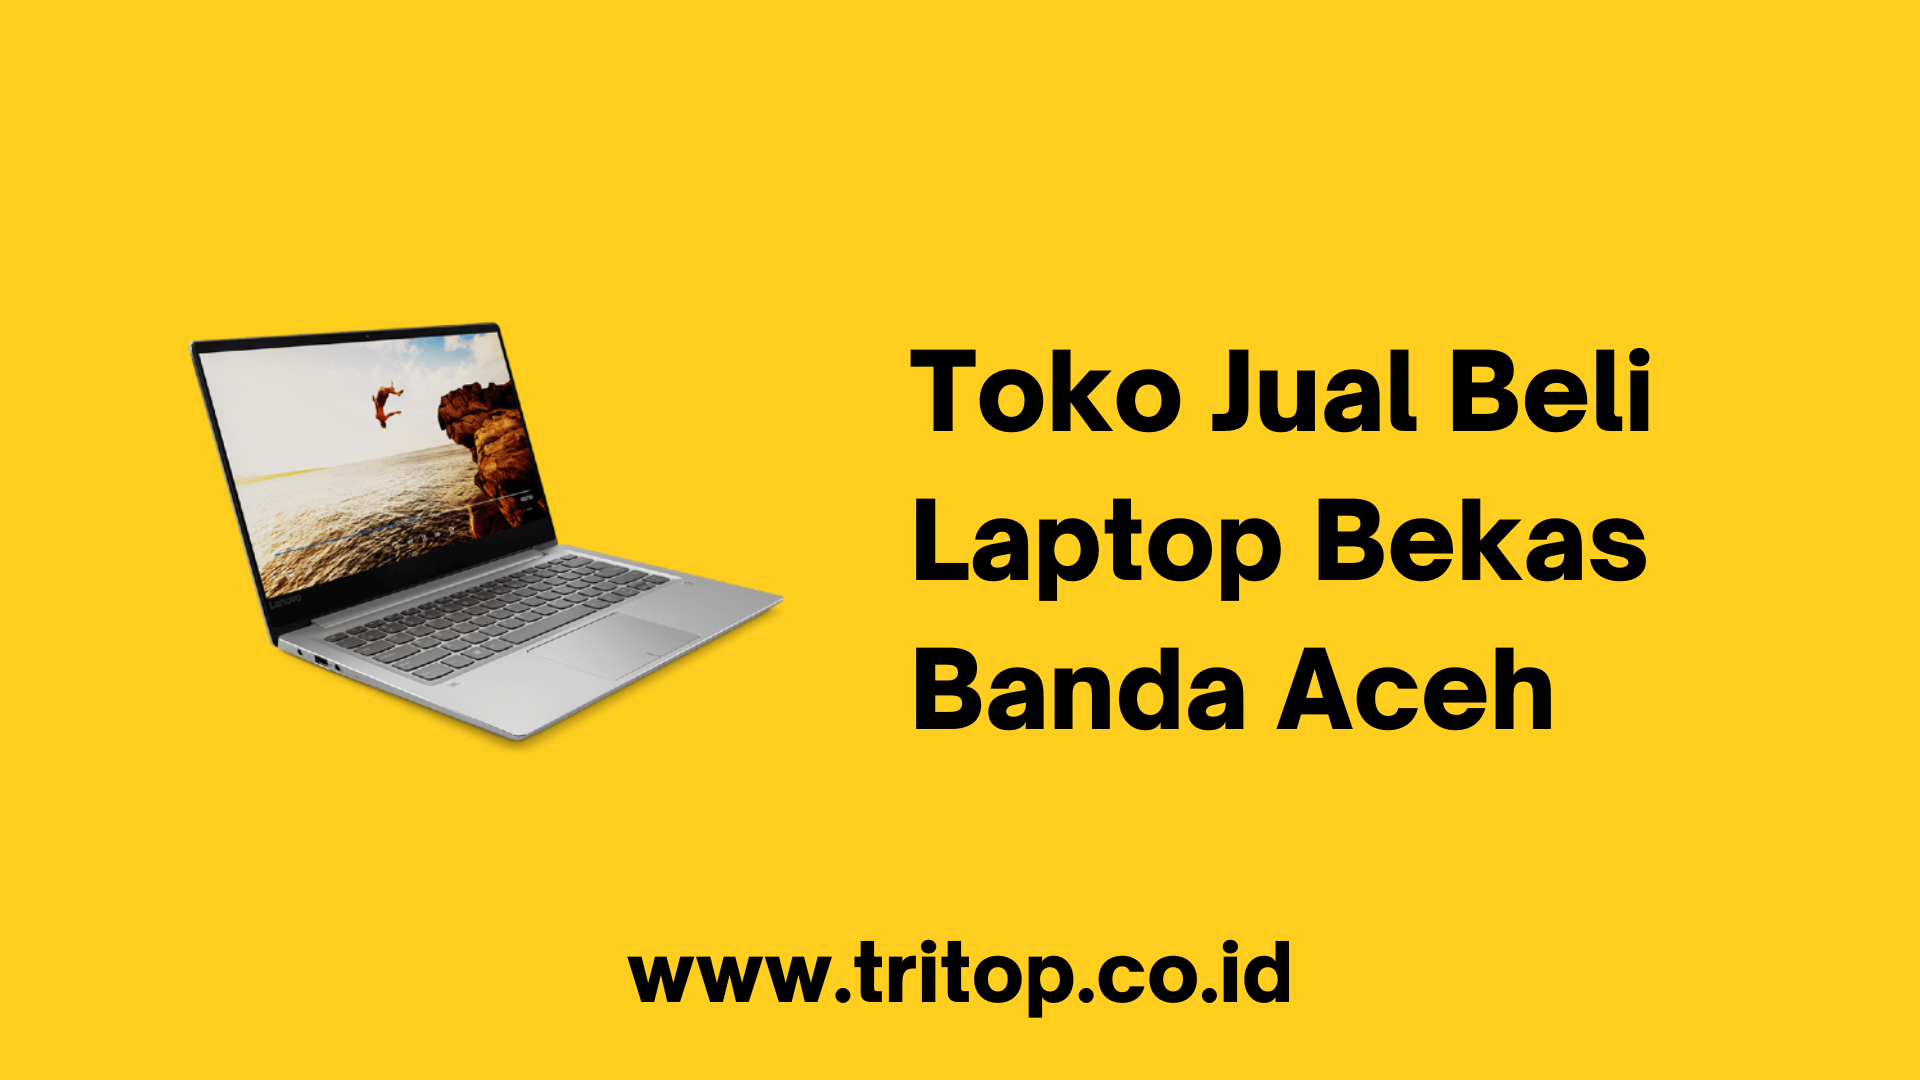 Toko Jual Beli Laptop Bekas Banda Aceh